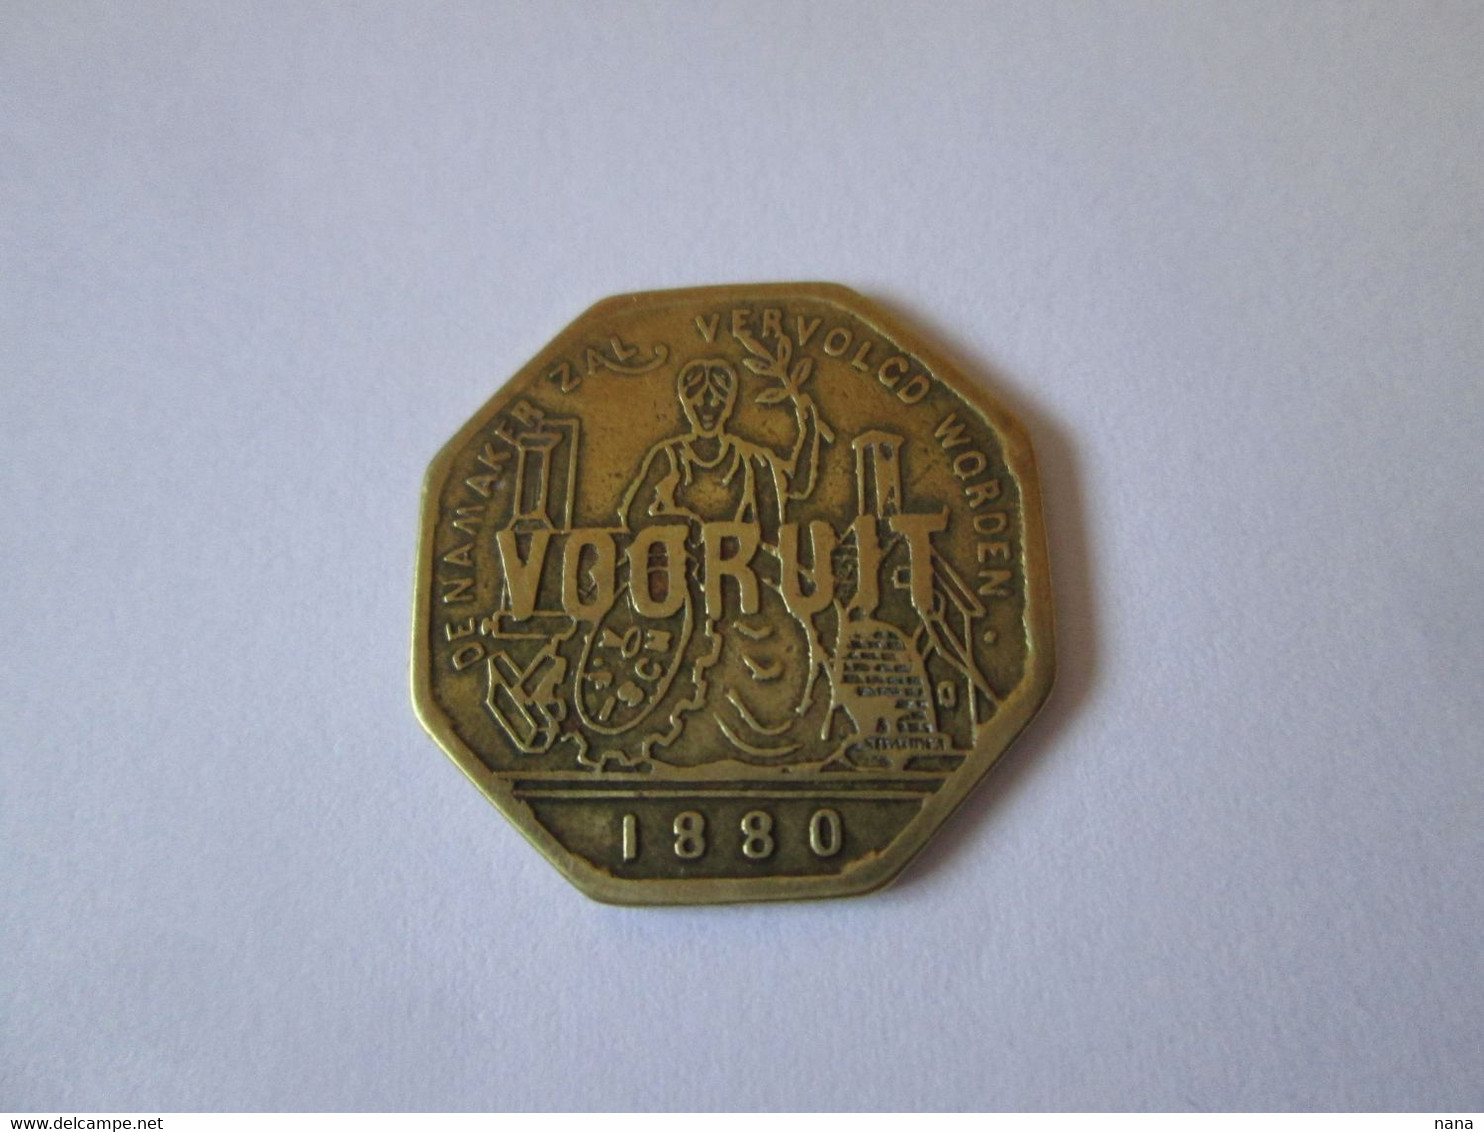 Belgique Jeton Bronze De Necessite Vooruit-1 Broodkaart 1880/ Belgium Bronze Token Of Necessity Vooruit-1Broodkaart 1880 - Monetary / Of Necessity